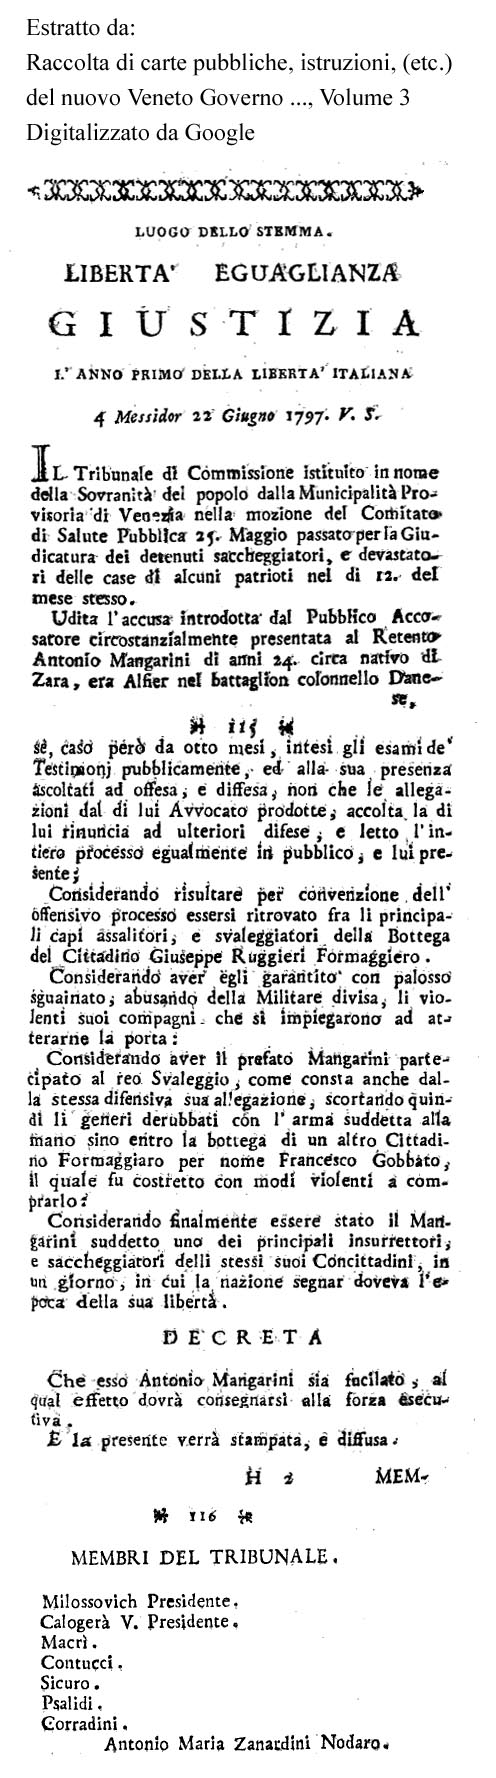 Storia di Venezia, Sentenza di morte pronunciata dalla Municipalità Provvisoria di Venezia contro Antonio Mangarini, insorto contro la congiura filofrancese.